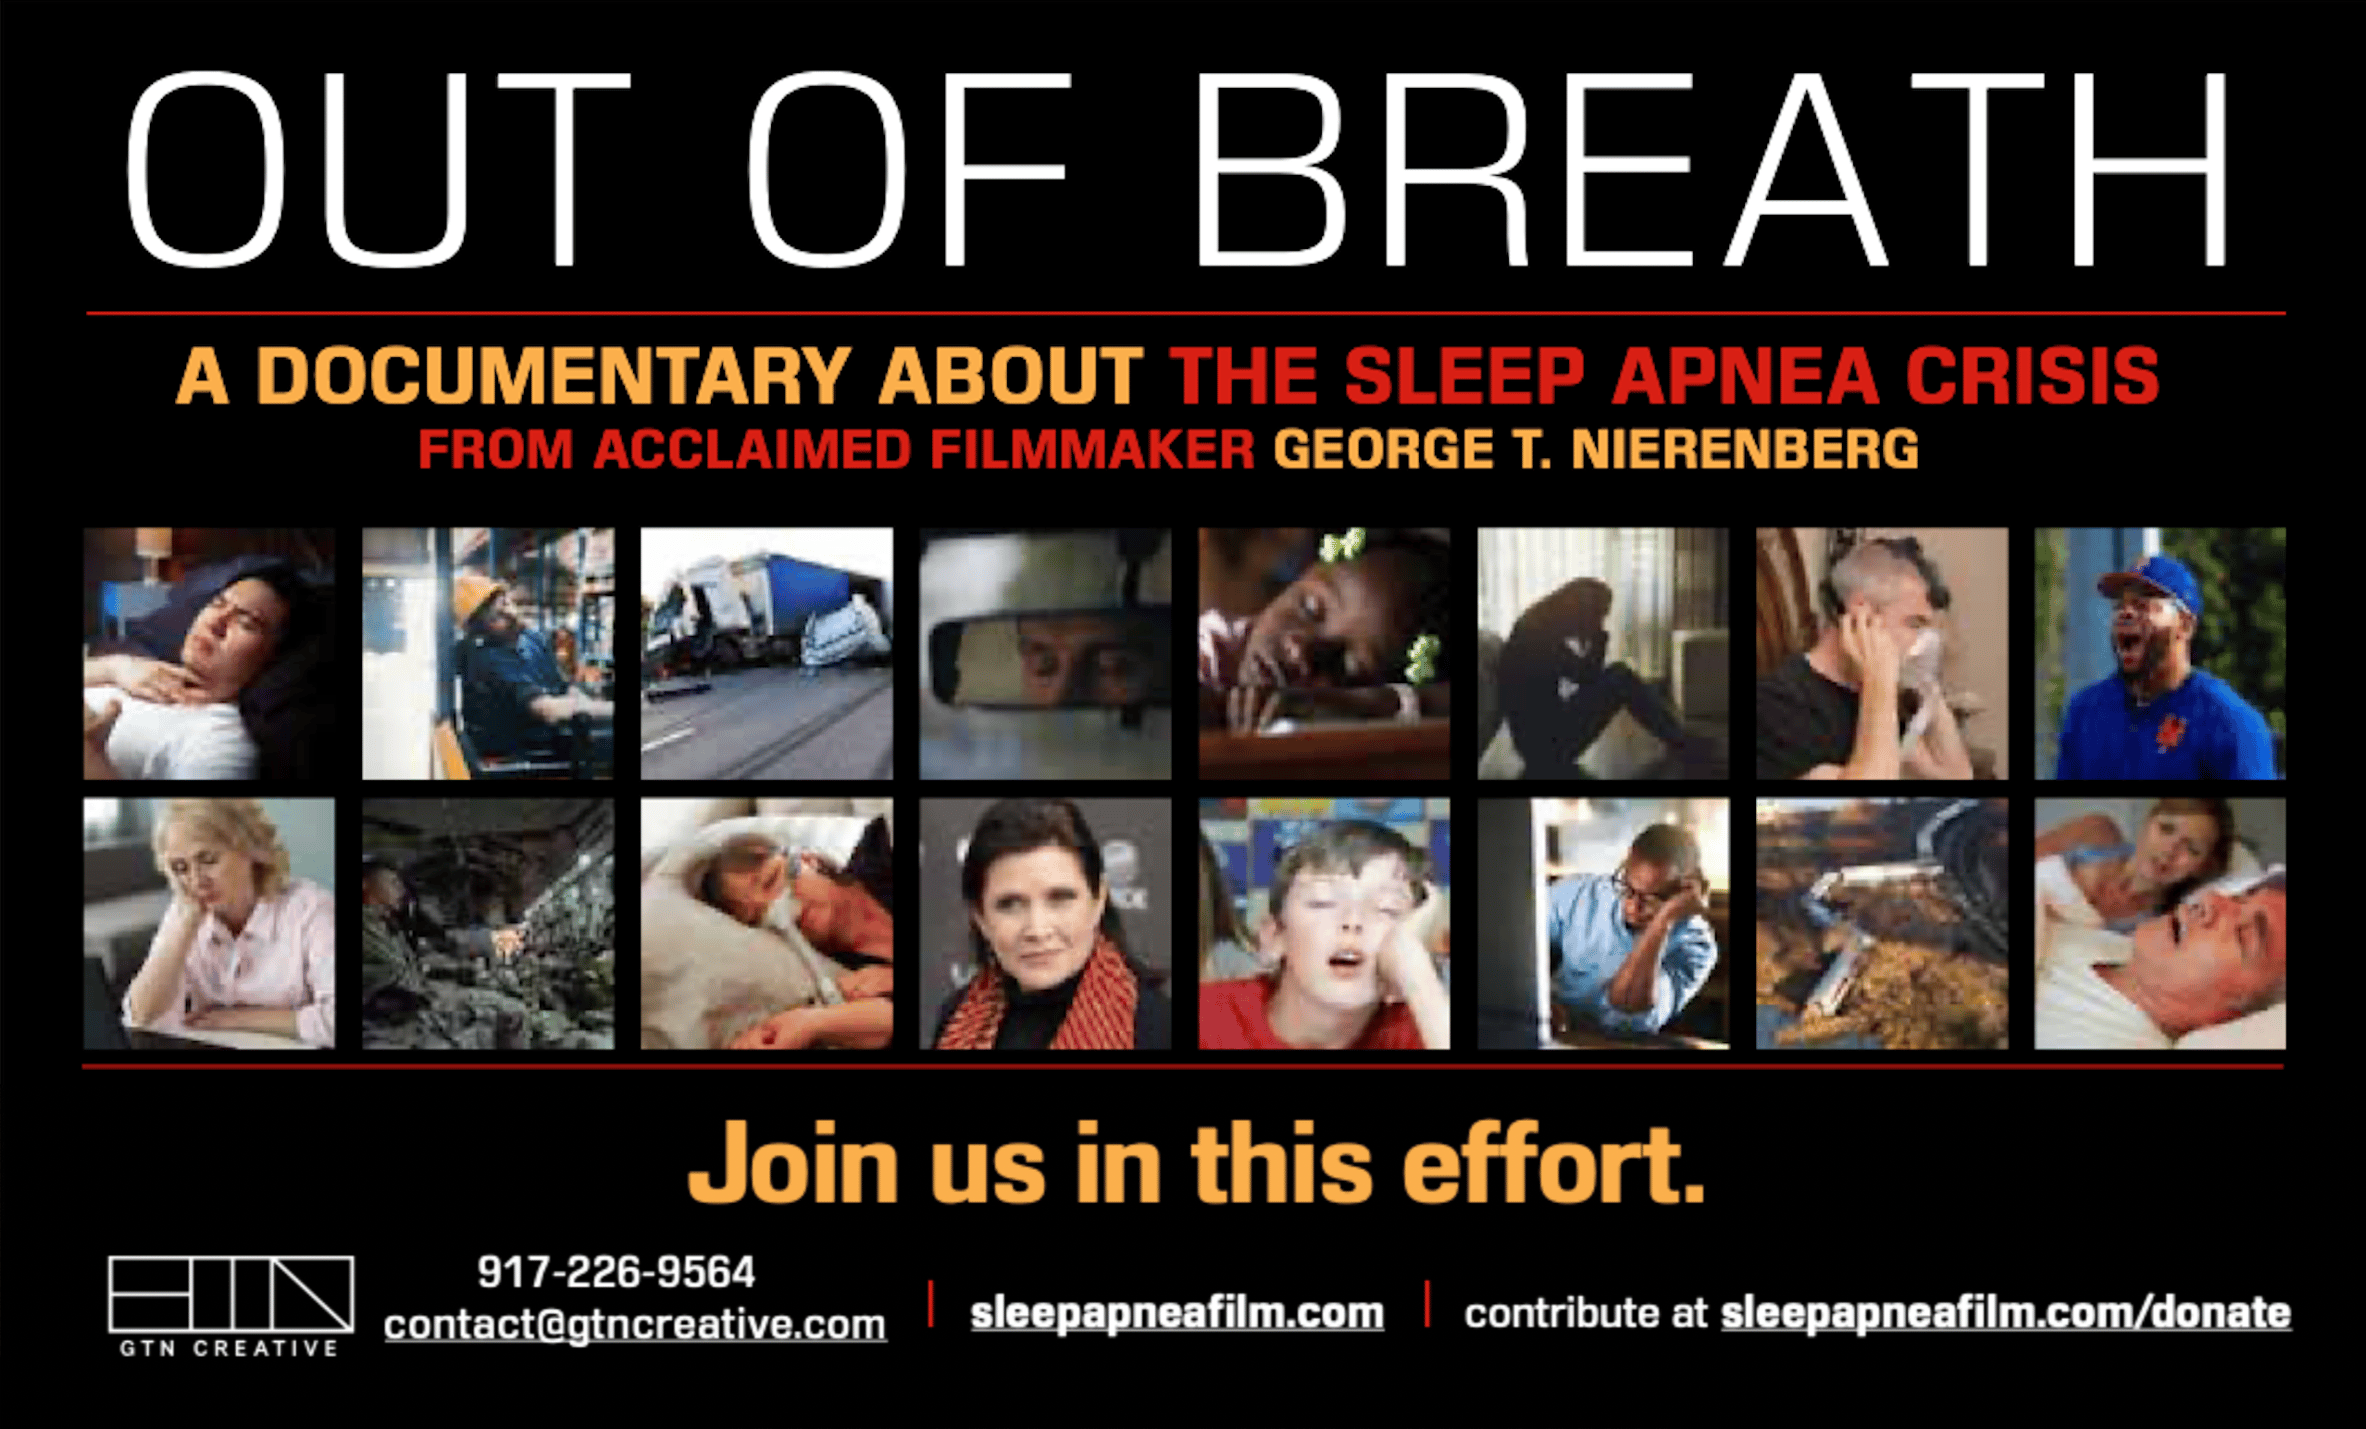 Award-Winning Filmmaker's Documentary on Sleep Apnea